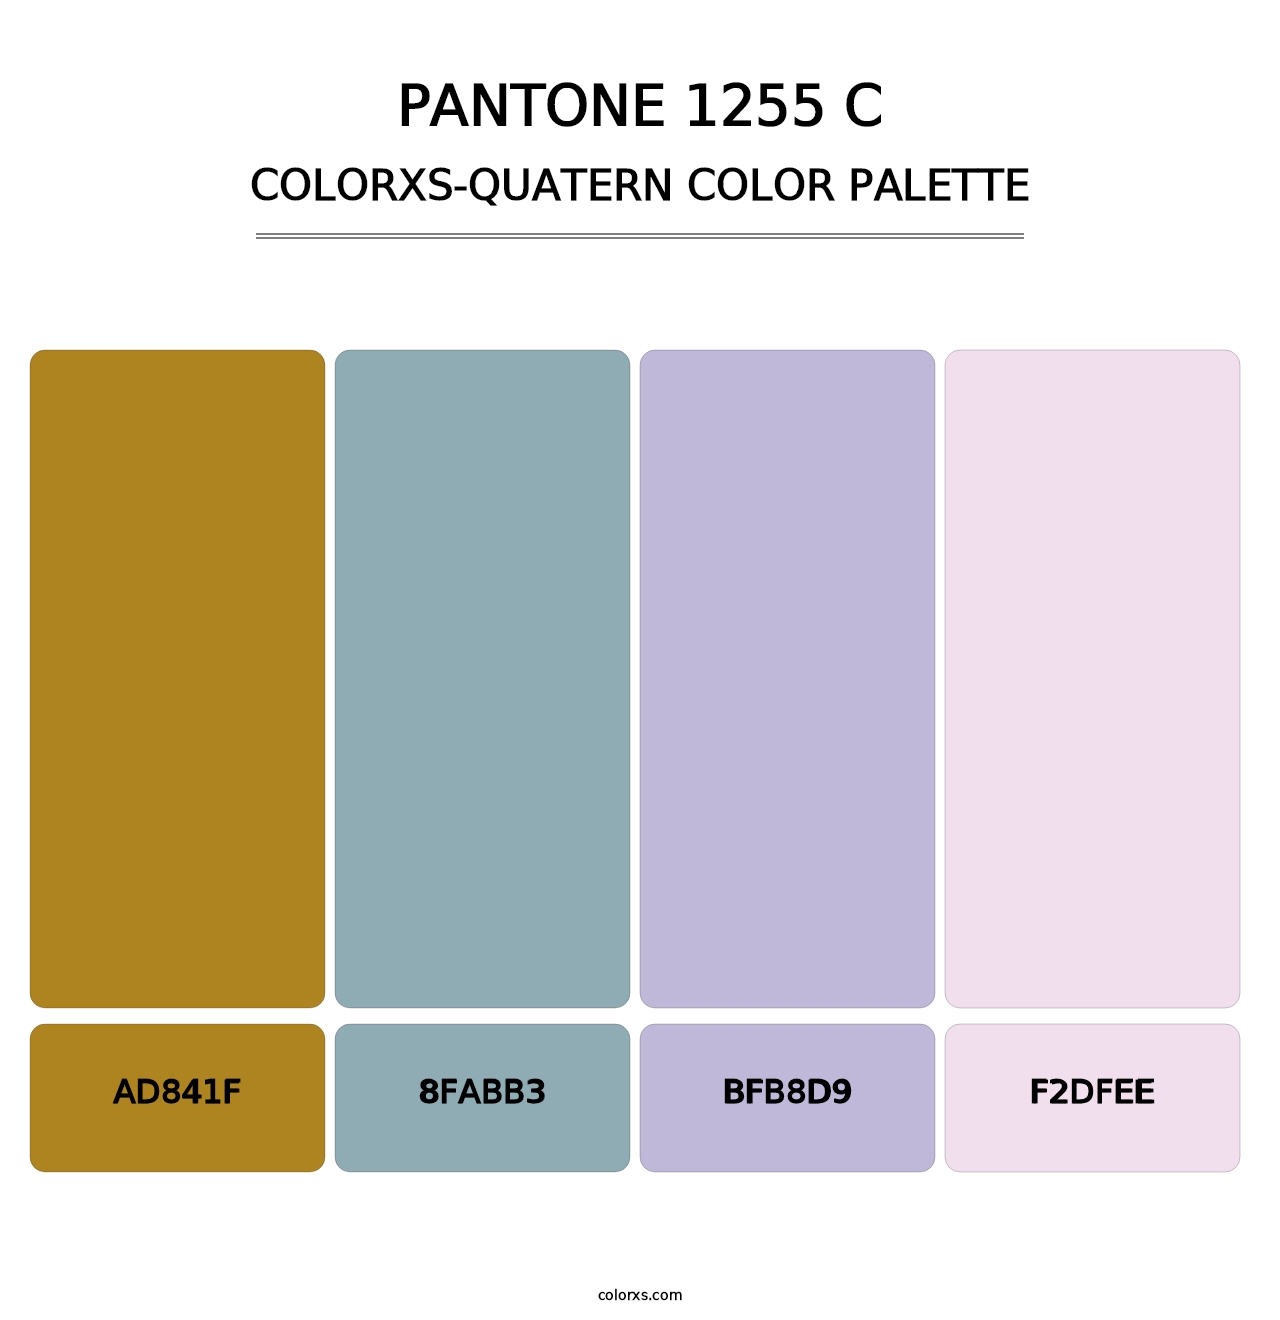 PANTONE 1255 C - Colorxs Quatern Palette